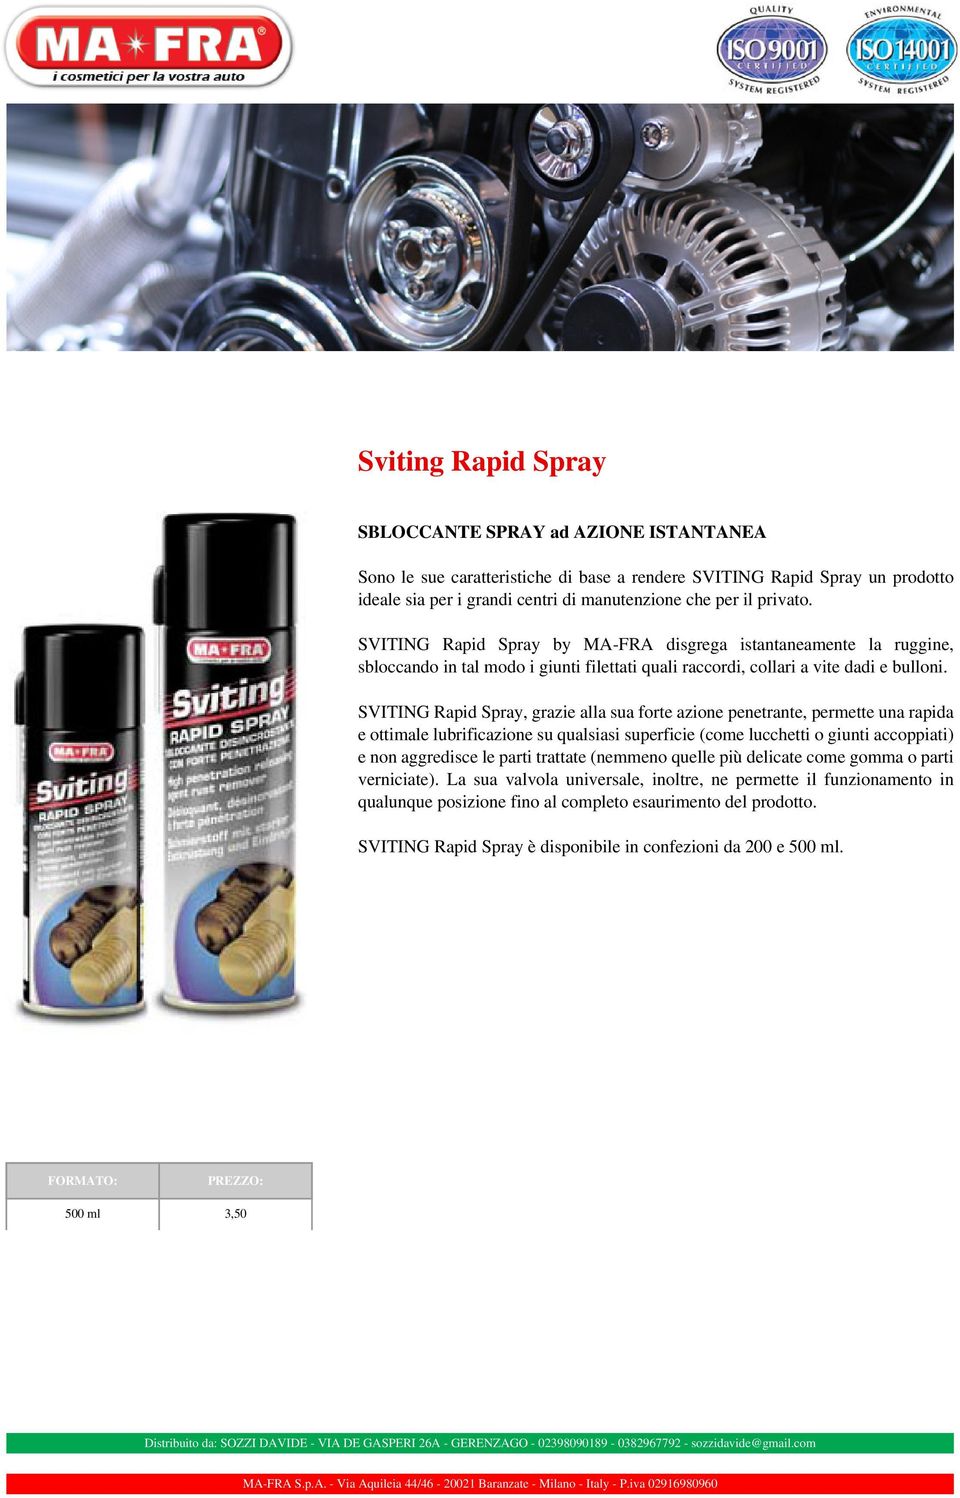 SVITING Rapid Spray, grazie alla sua forte azione penetrante, permette una rapida e ottimale lubrificazione su qualsiasi superficie (come lucchetti o giunti accoppiati) e non aggredisce le parti